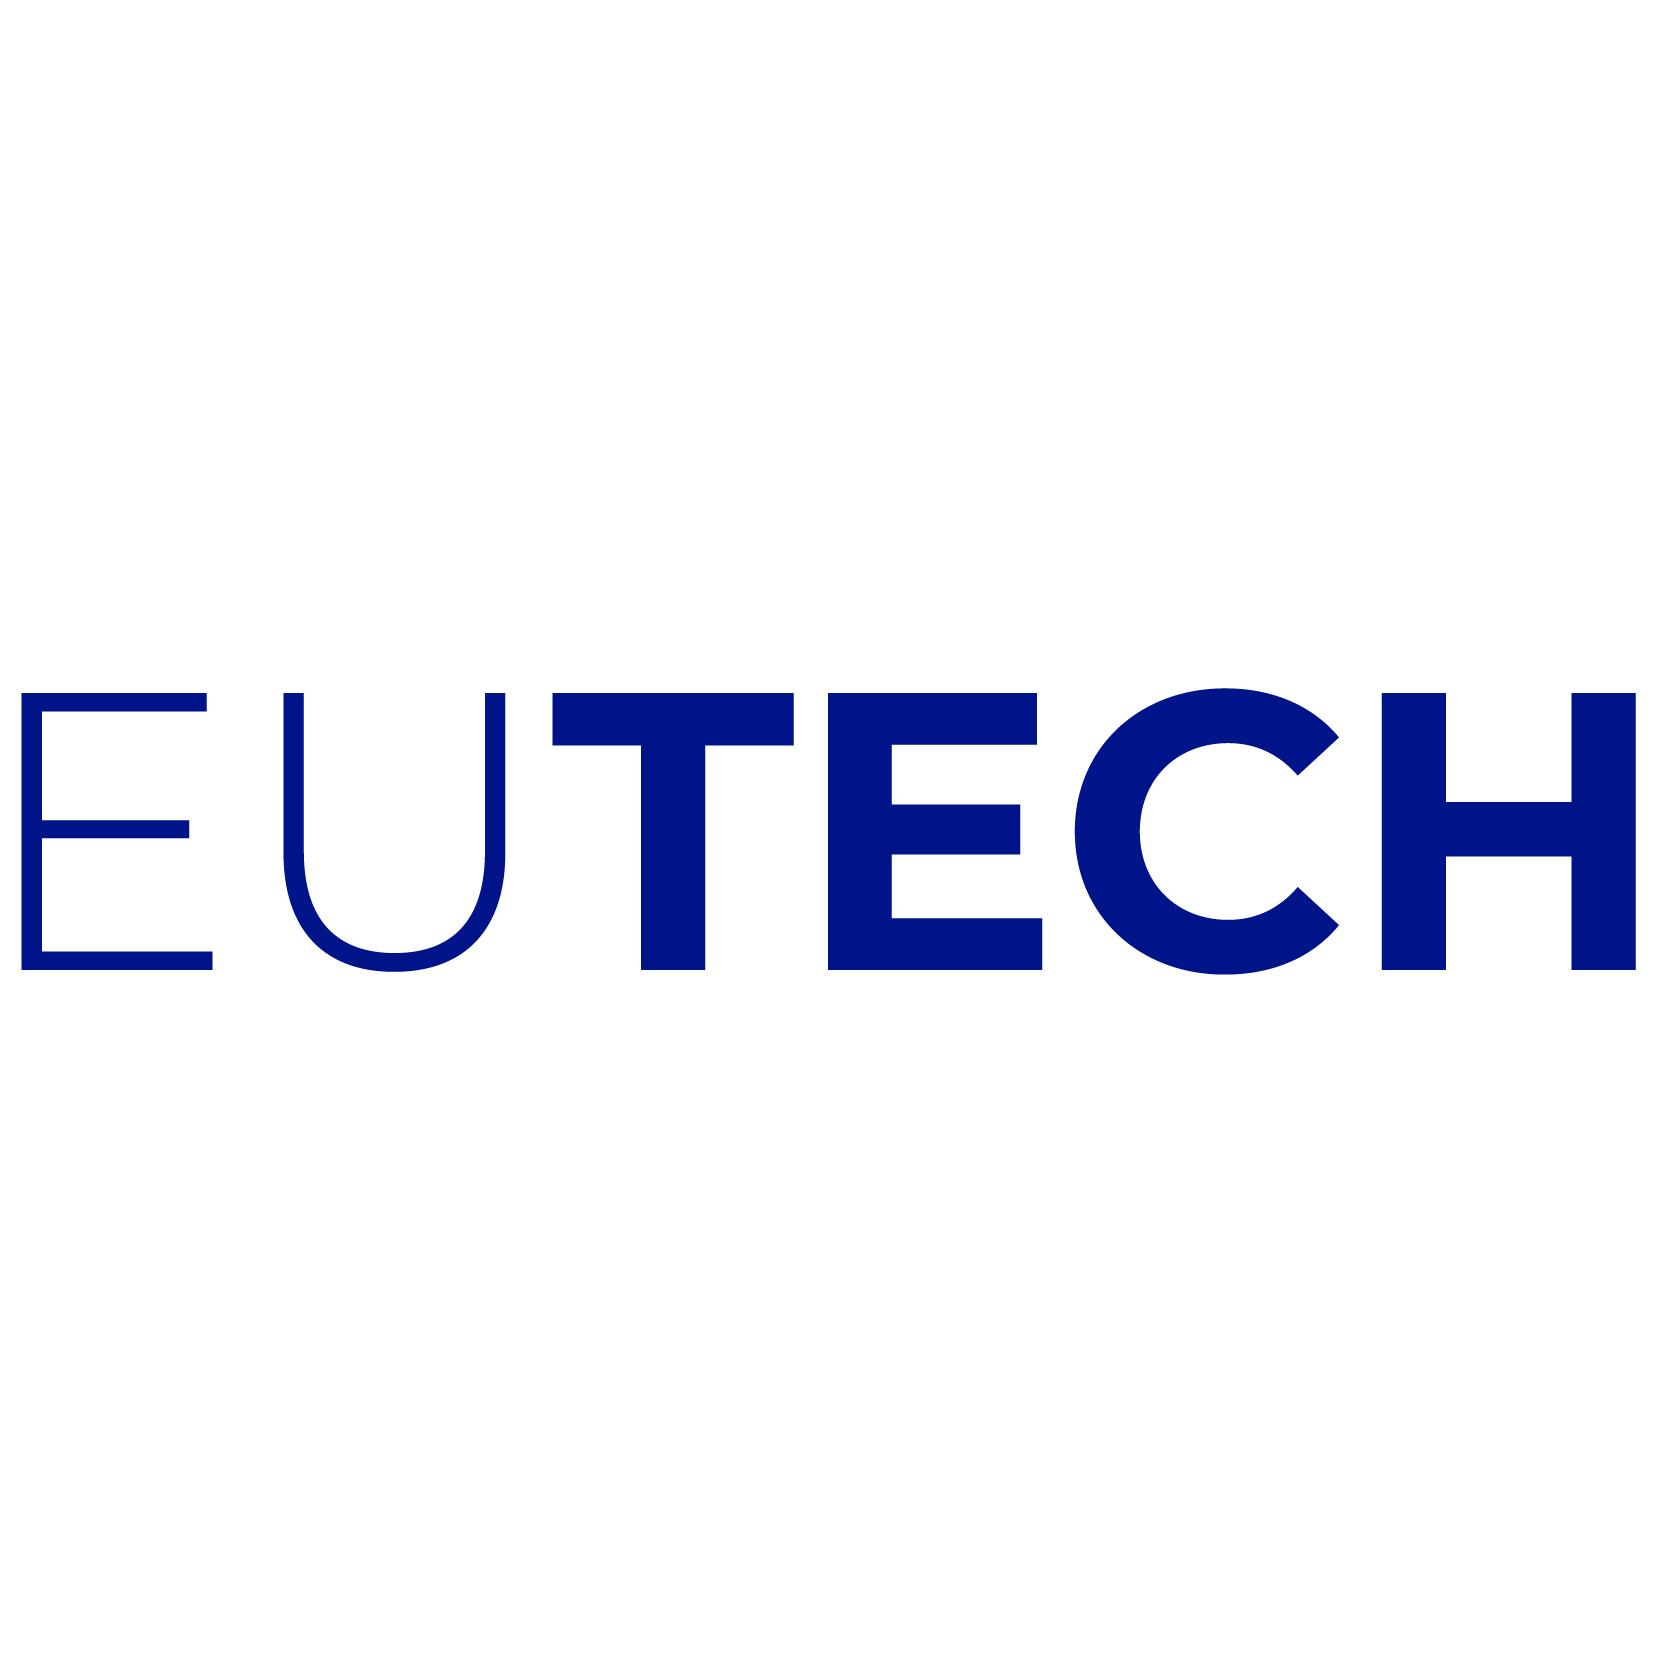 EUTECH-Logo-with-bg_Zeichenflache-1-5